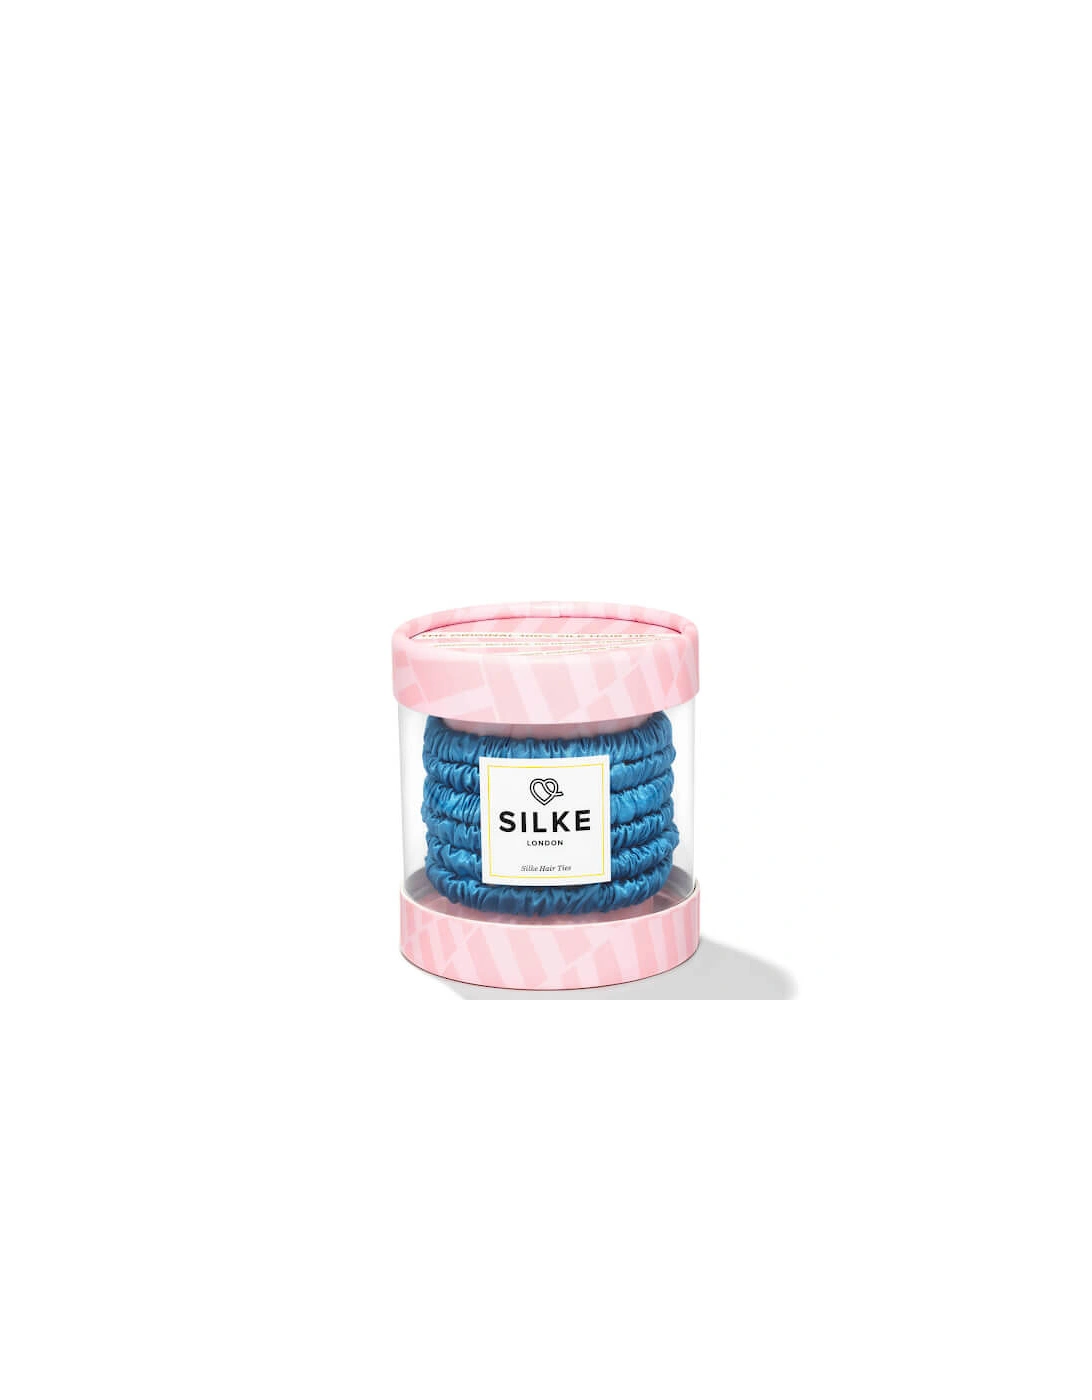 SILKE Hair Ties Bluebelle Powder - Blue, 2 of 1